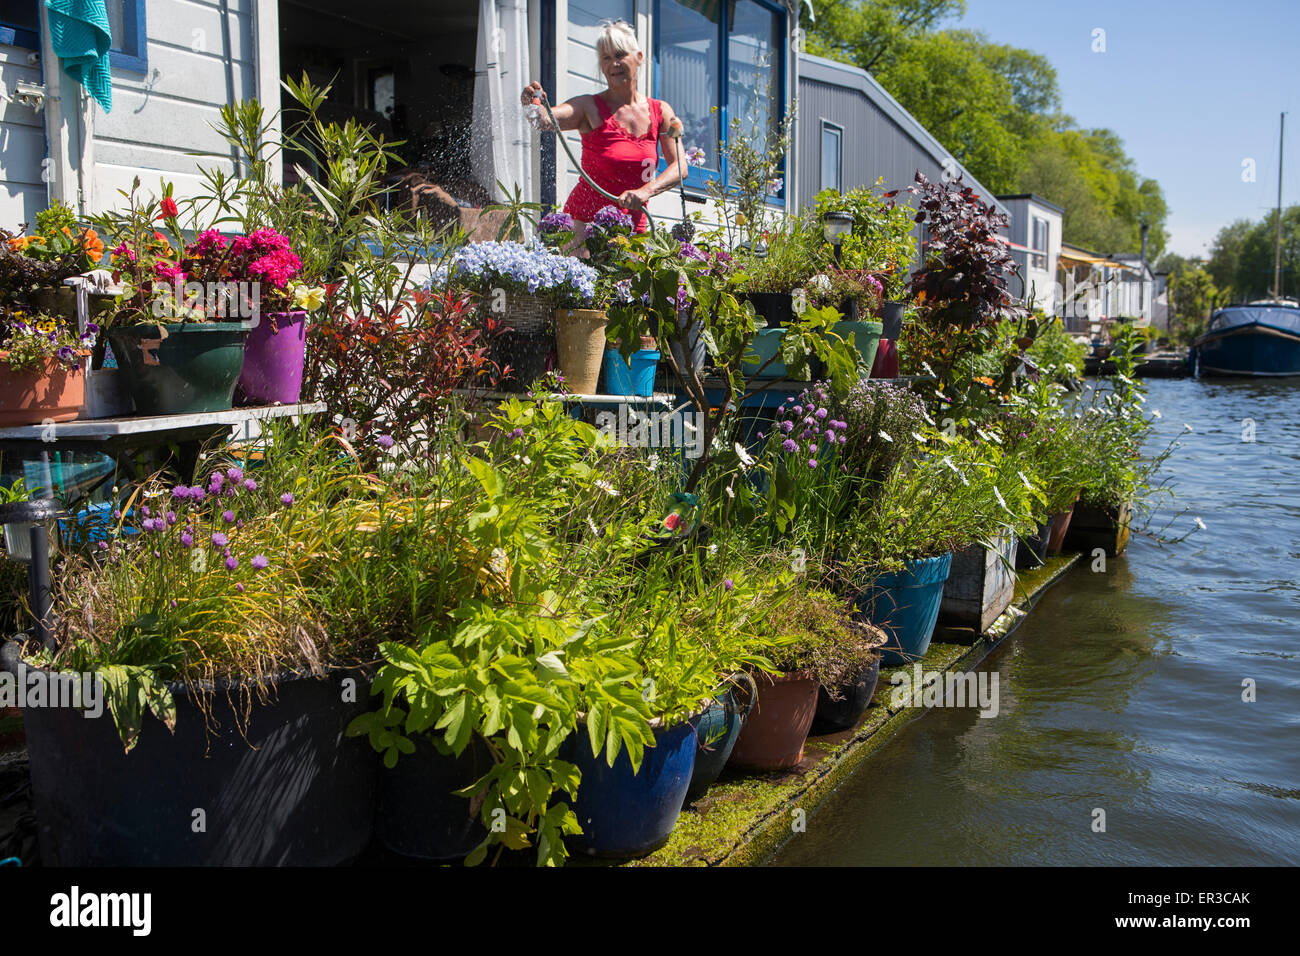 Holländerin, gießen ihre Pflanzen auf einem Hausboot in Amsterdam Garten,  Gartenarbeit, Blumen, grün, Vegetation, Erholung Stockfotografie - Alamy